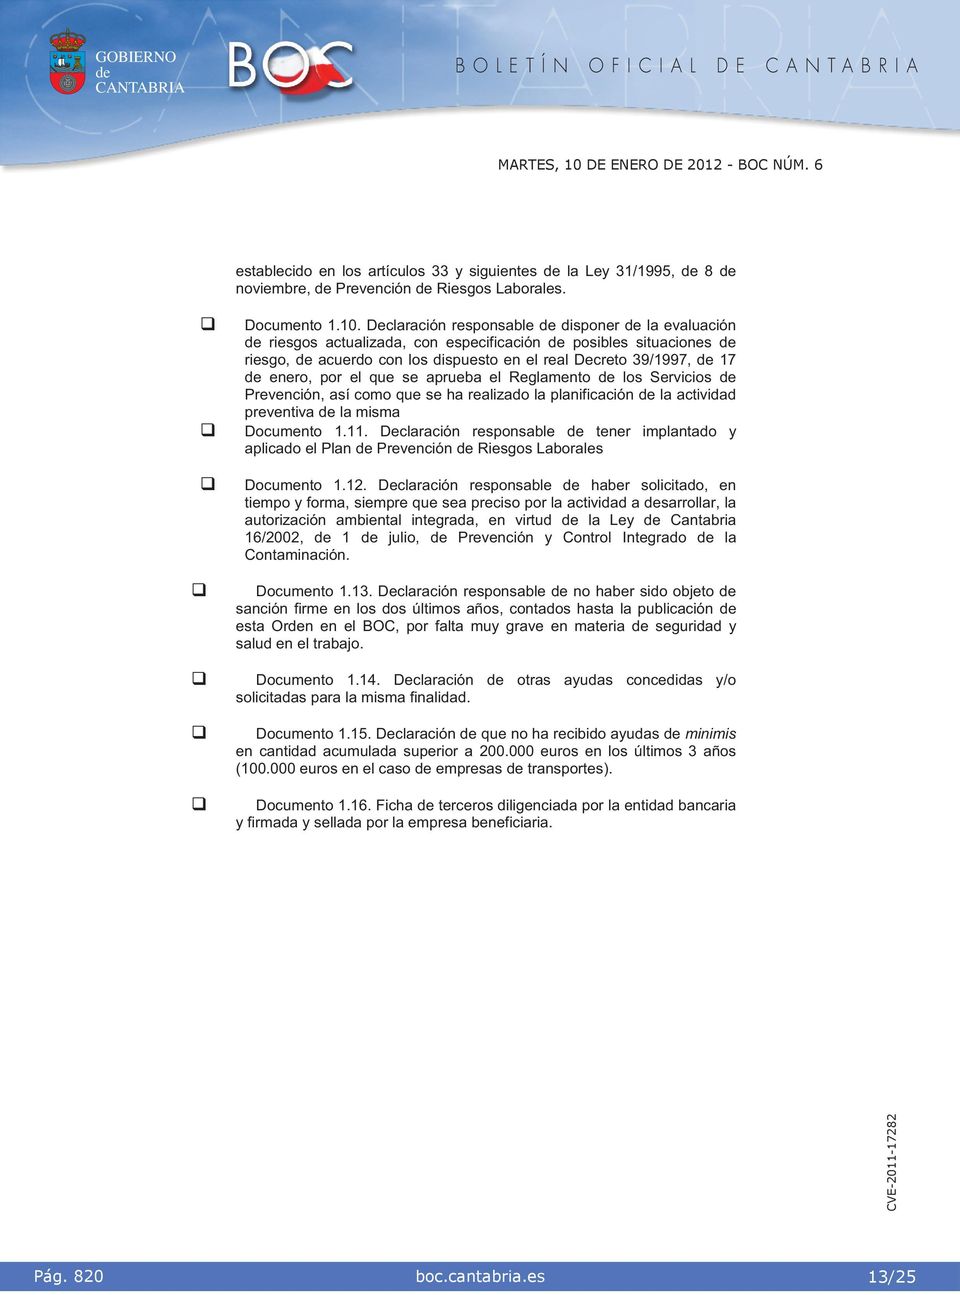 Reglamento los Servcos Prevencón, así como que se ha realzado la planfcacón la actvdad preventva la msma Documento 1.11.